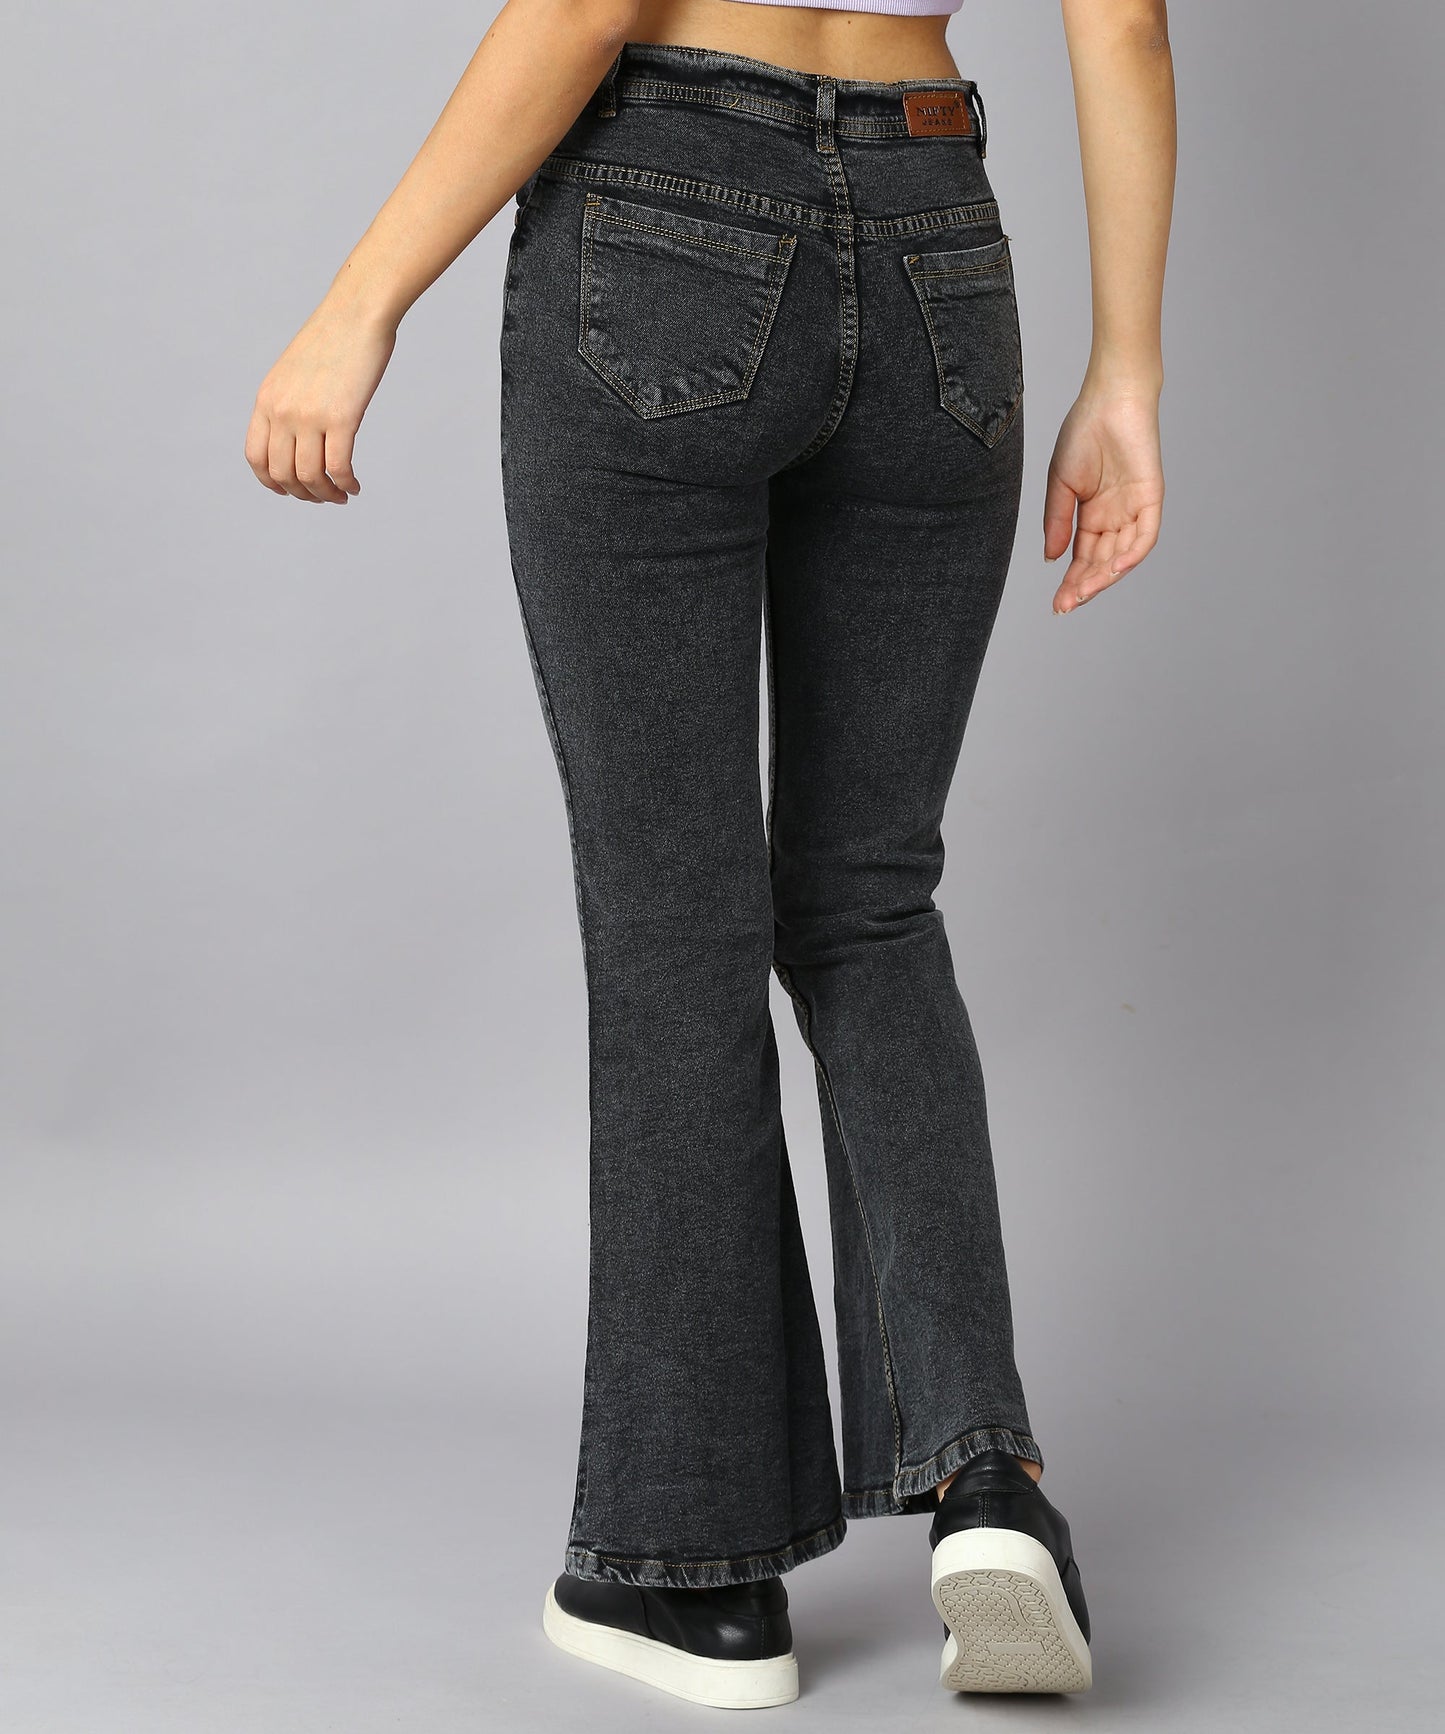 High Waist Bell Bottom Black Jeans - NiftyJeans